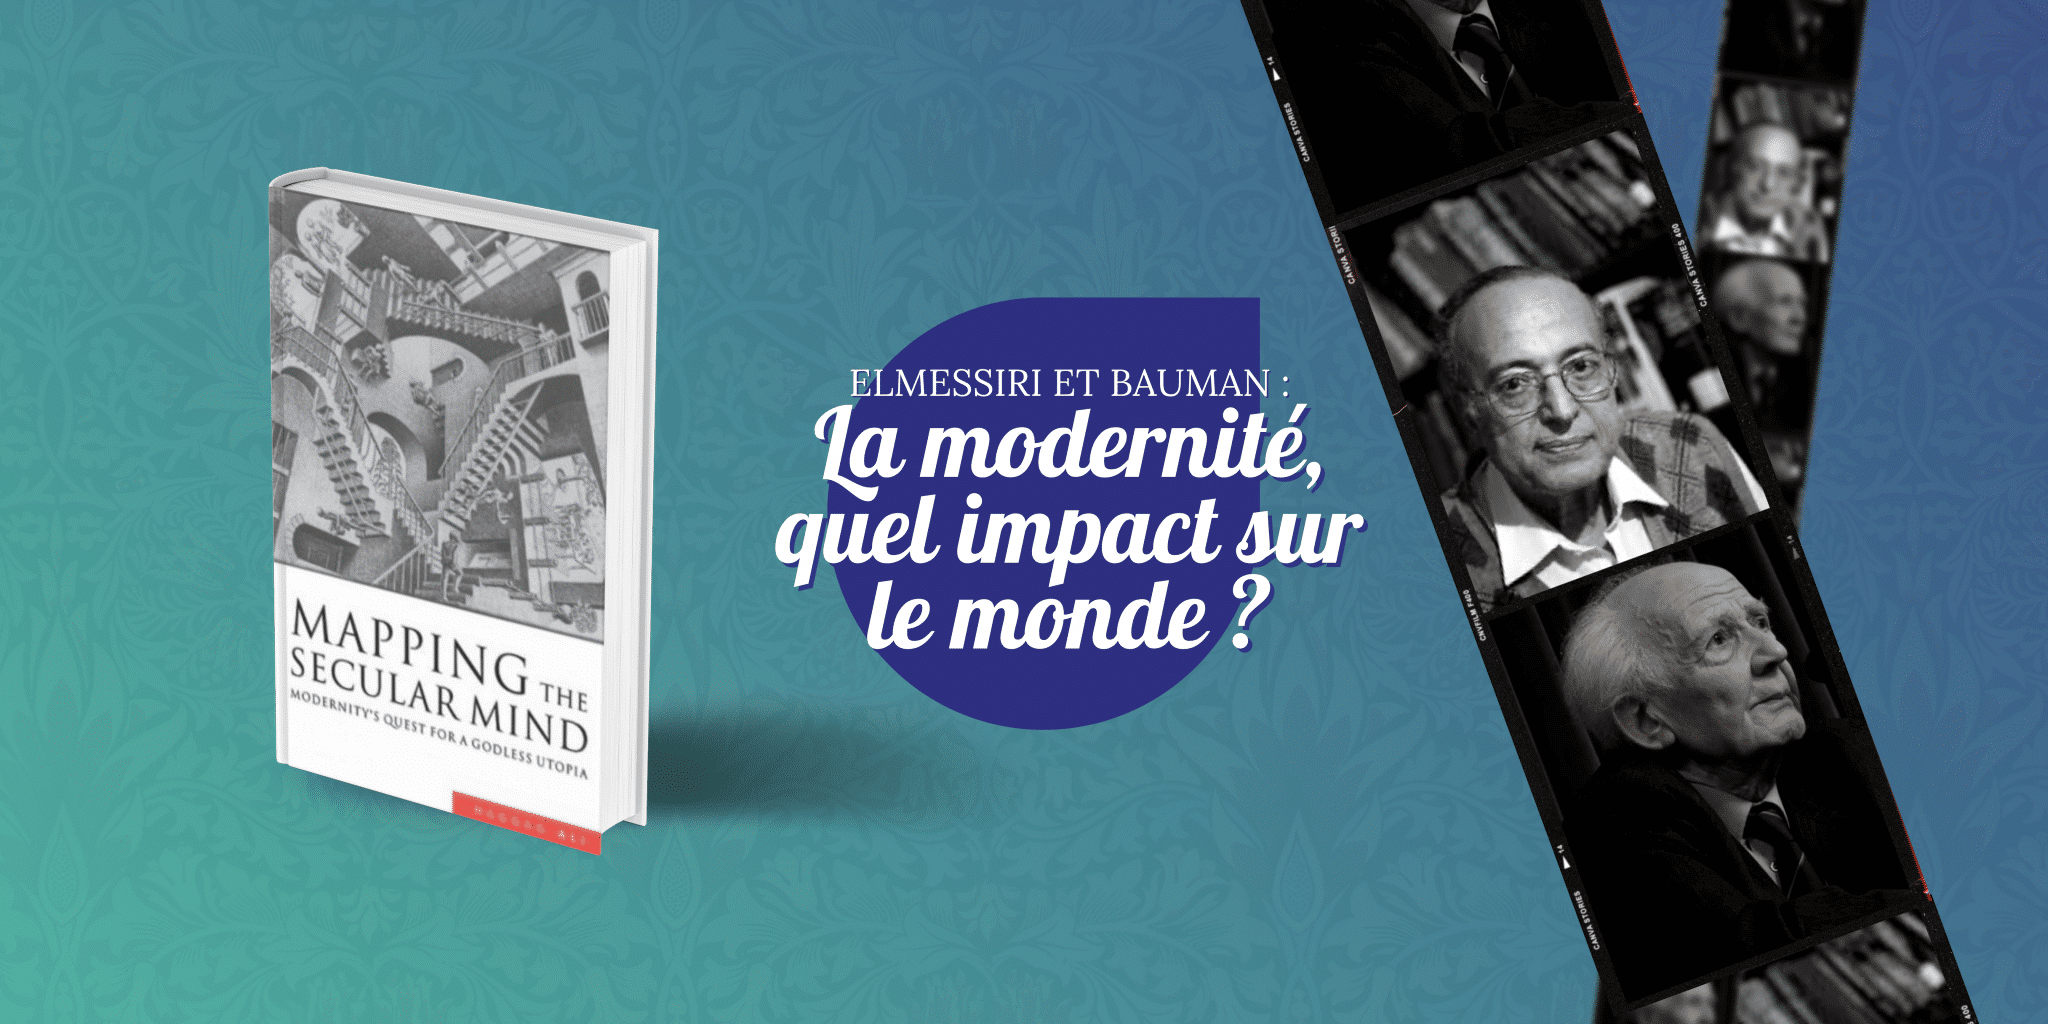 Featured image for “Elmessiri et Bauman : La modernité, quel impact sur le monde ?”